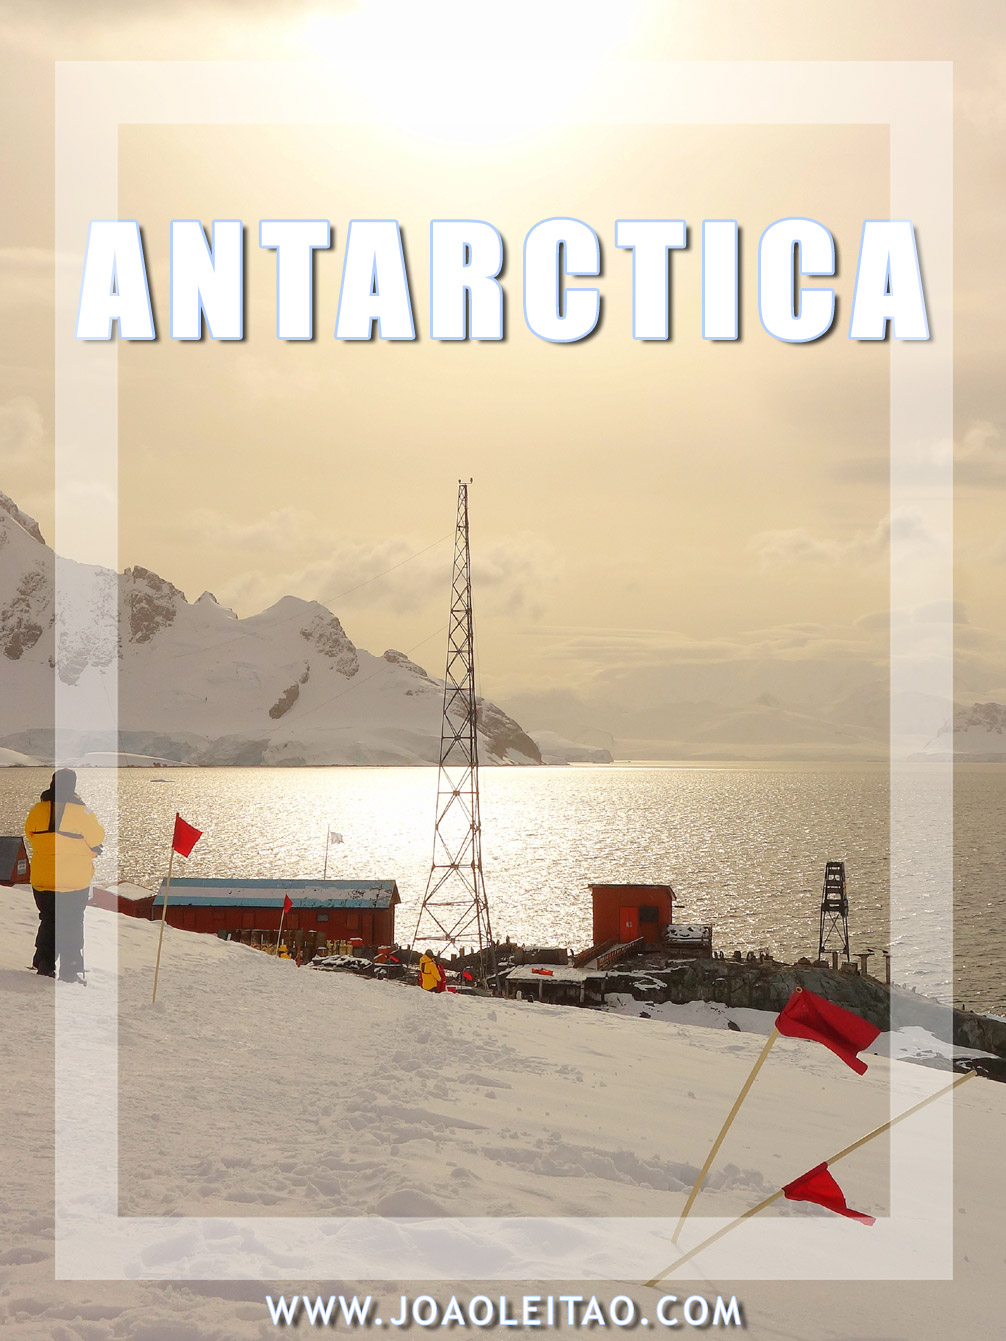 Visit Antarctica